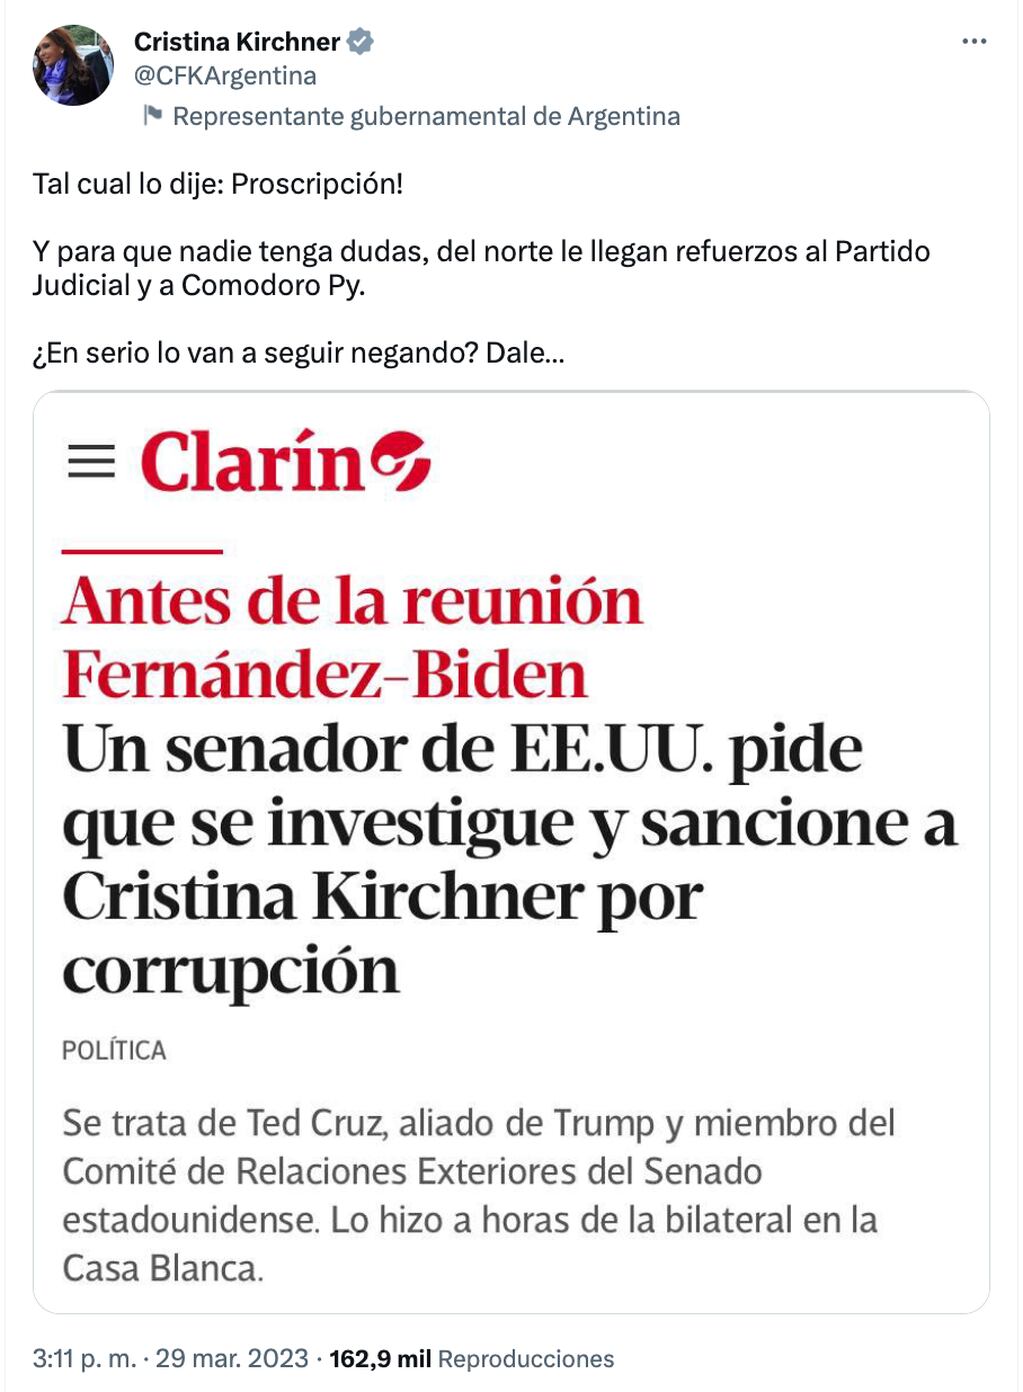 Cristina Kirchner salió al cruce de acusaciones del senador republicano Ted Cruz.